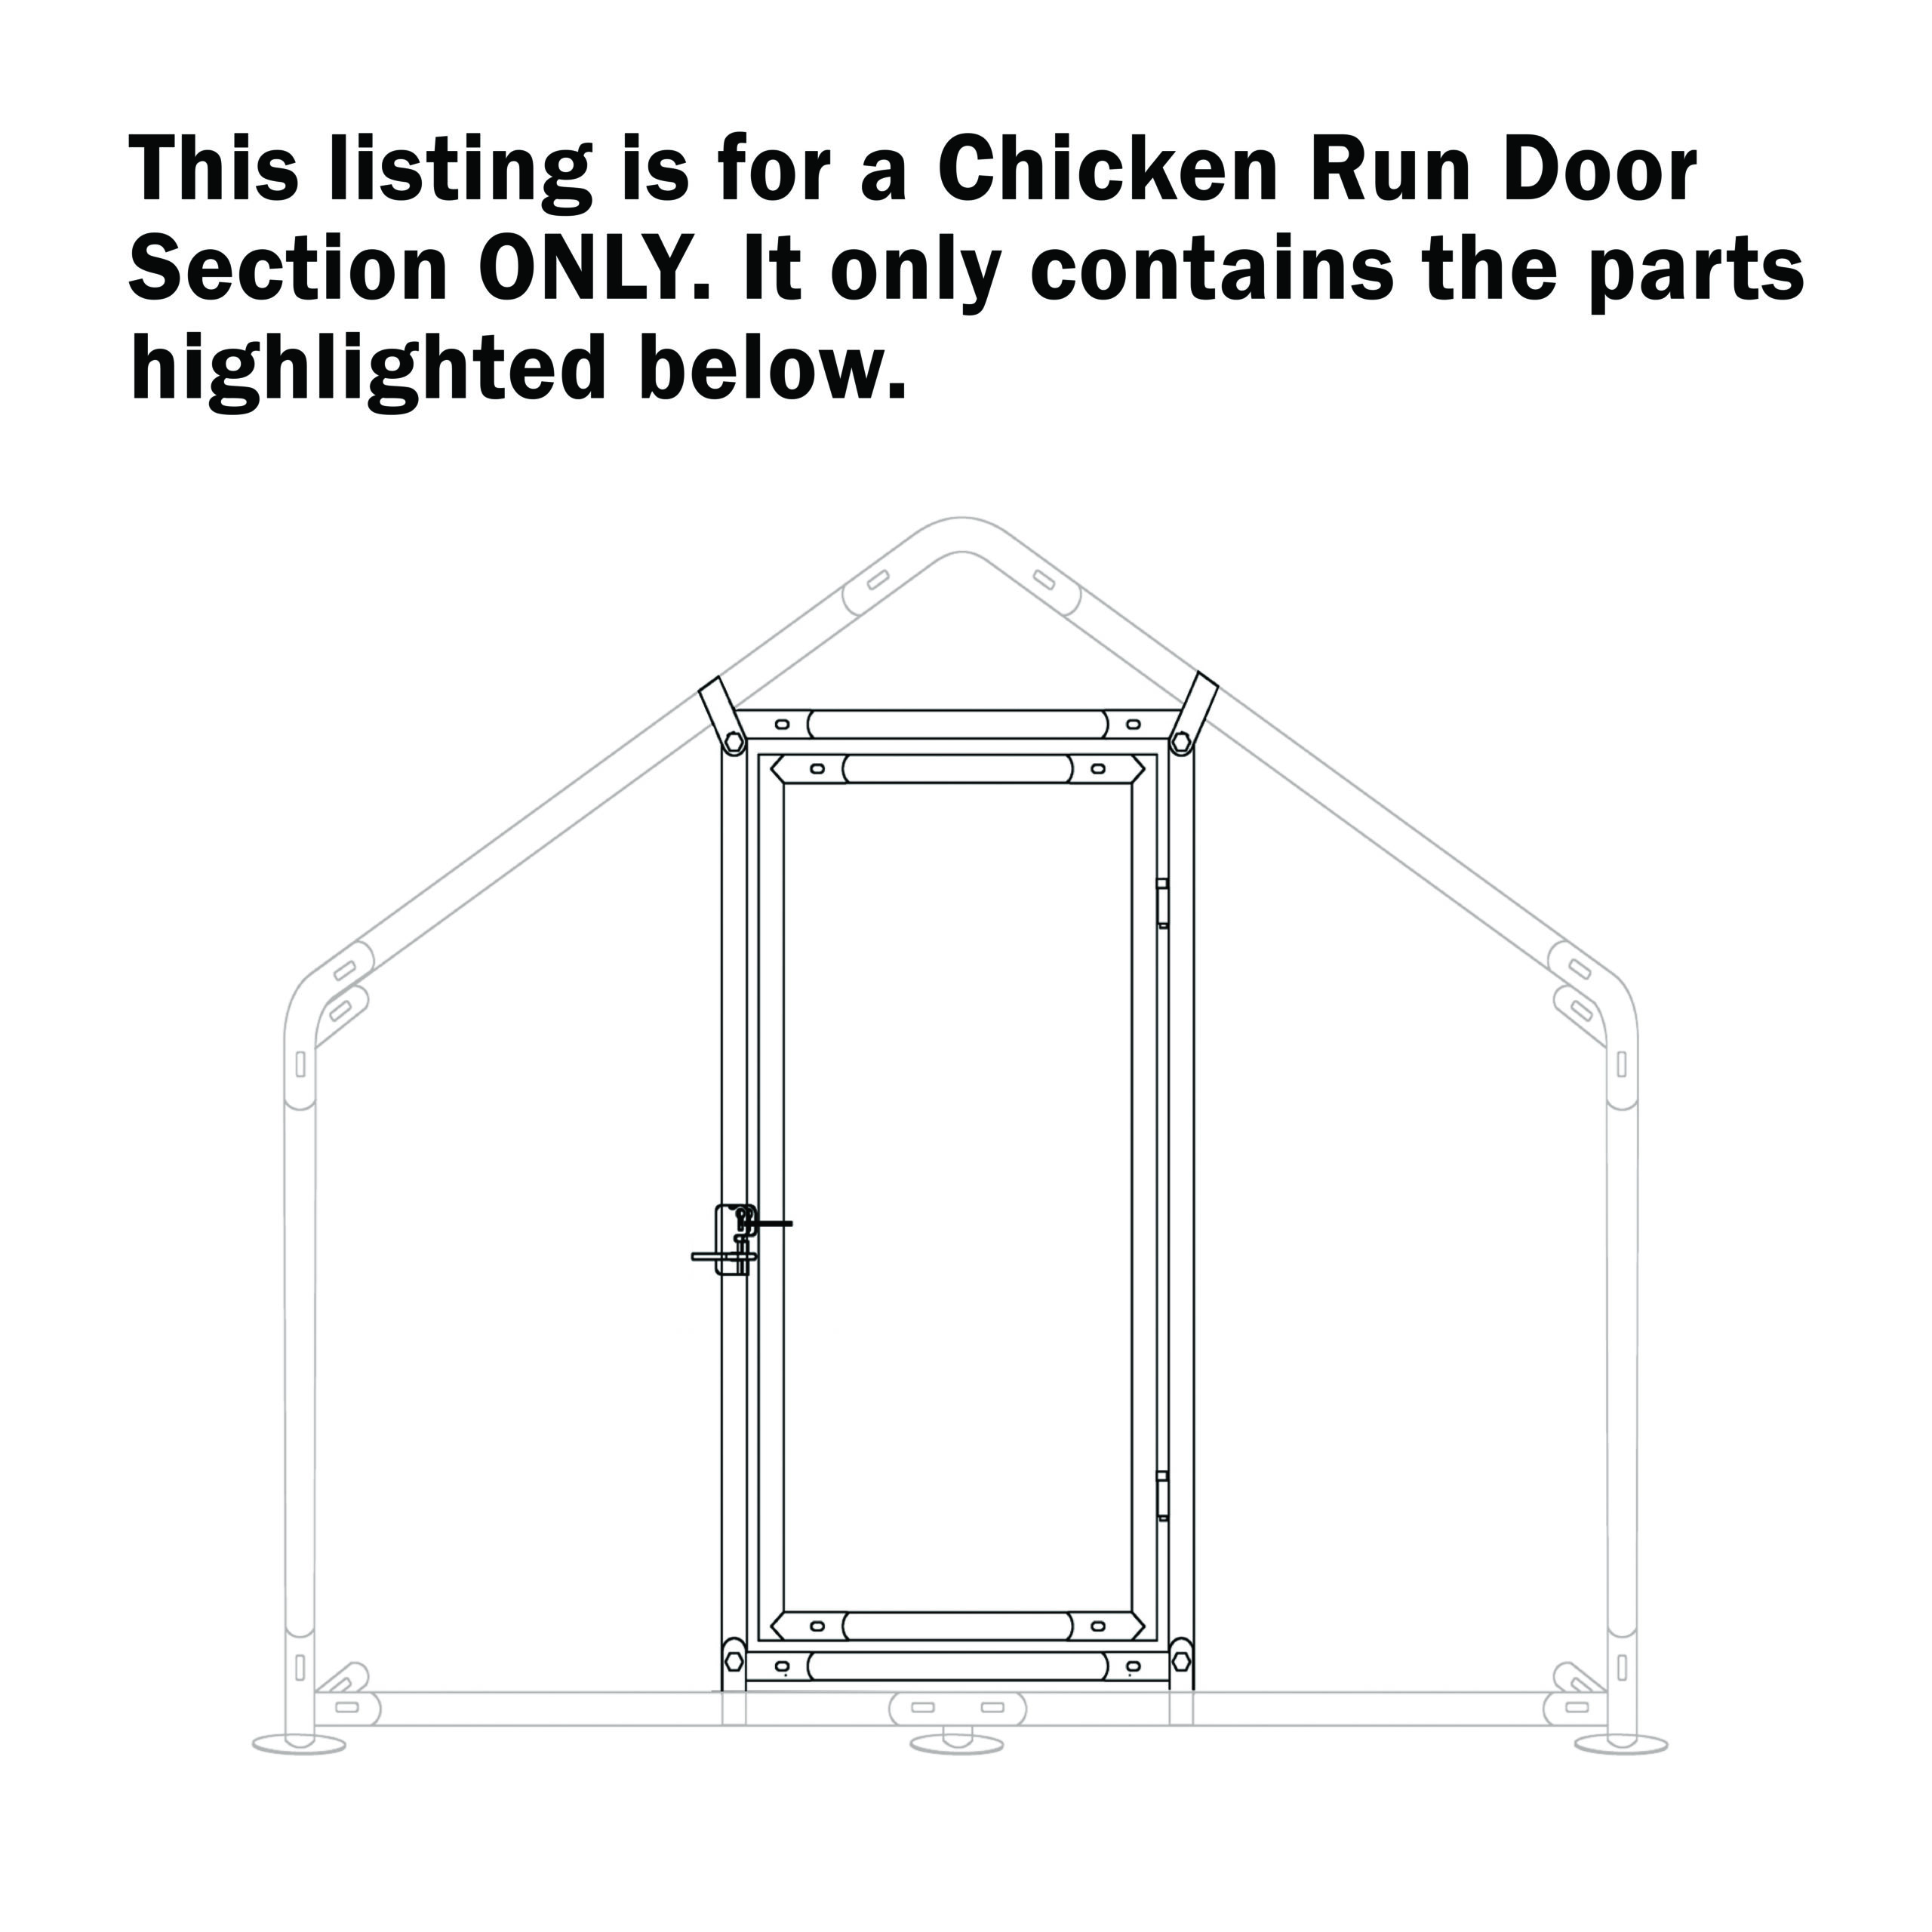 Chicken Run Door Parts List Image